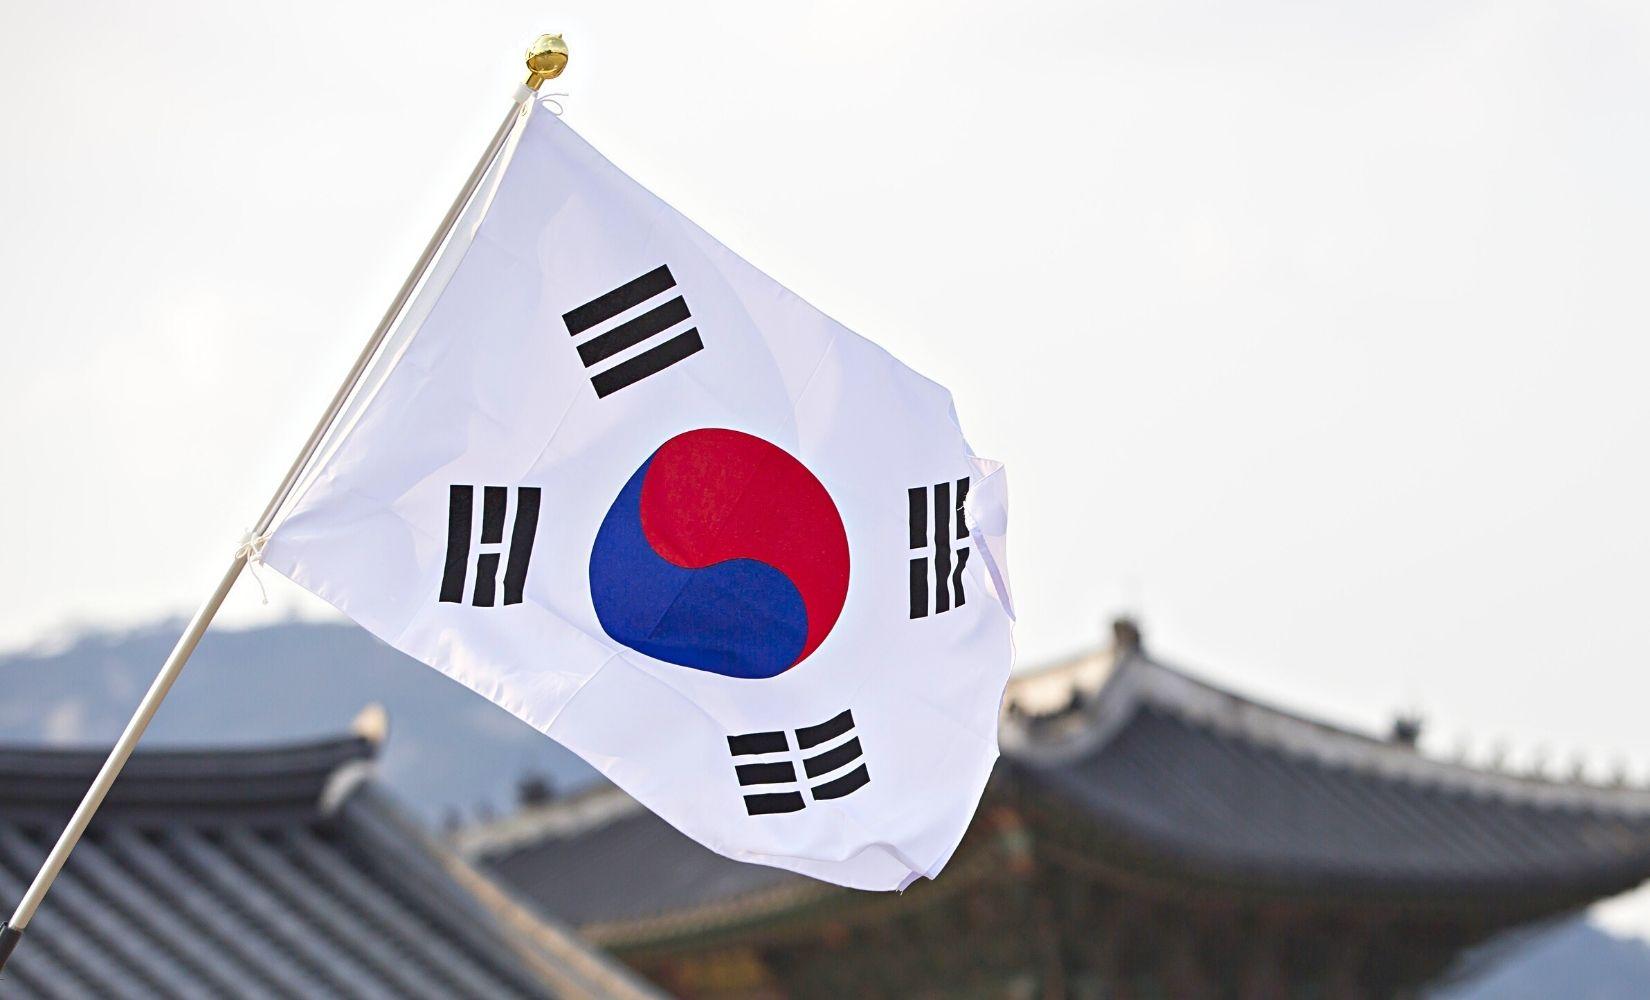 Cờ Taegeukgi là biểu tượng đặc trưng cho đất nước Hàn Quốc. Trong lịch sử hình thành cờ, Taegeukgi còn mang ý nghĩa vĩnh cửu và số phận của quốc gia. Từ khi được tạo ra, cờ Taegeukgi đã trở thành niềm tự hào của nhân dân Hàn Quốc. Hãy xem hình ảnh lịch sử hình thành cờ Taegeukgi để hiểu rõ hơn về bức tranh đa dạng và phong phú của đất nước này.